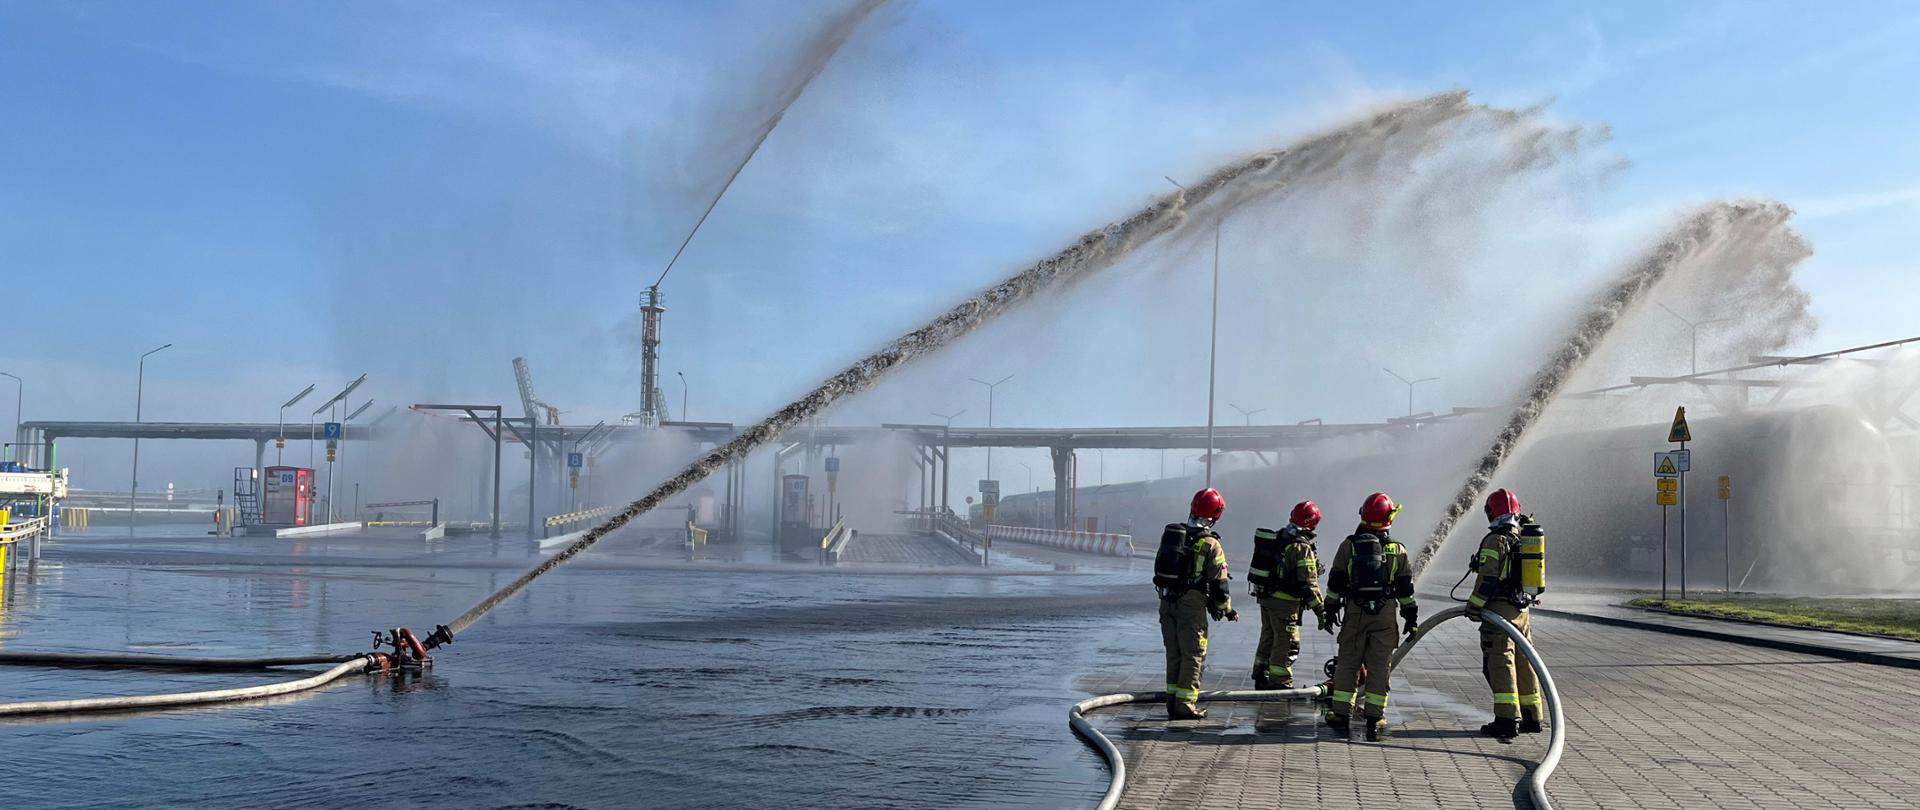 Widok symulowanego pożaru cysterny z LPG. Strażacy podają wodę z działek na cysternę.